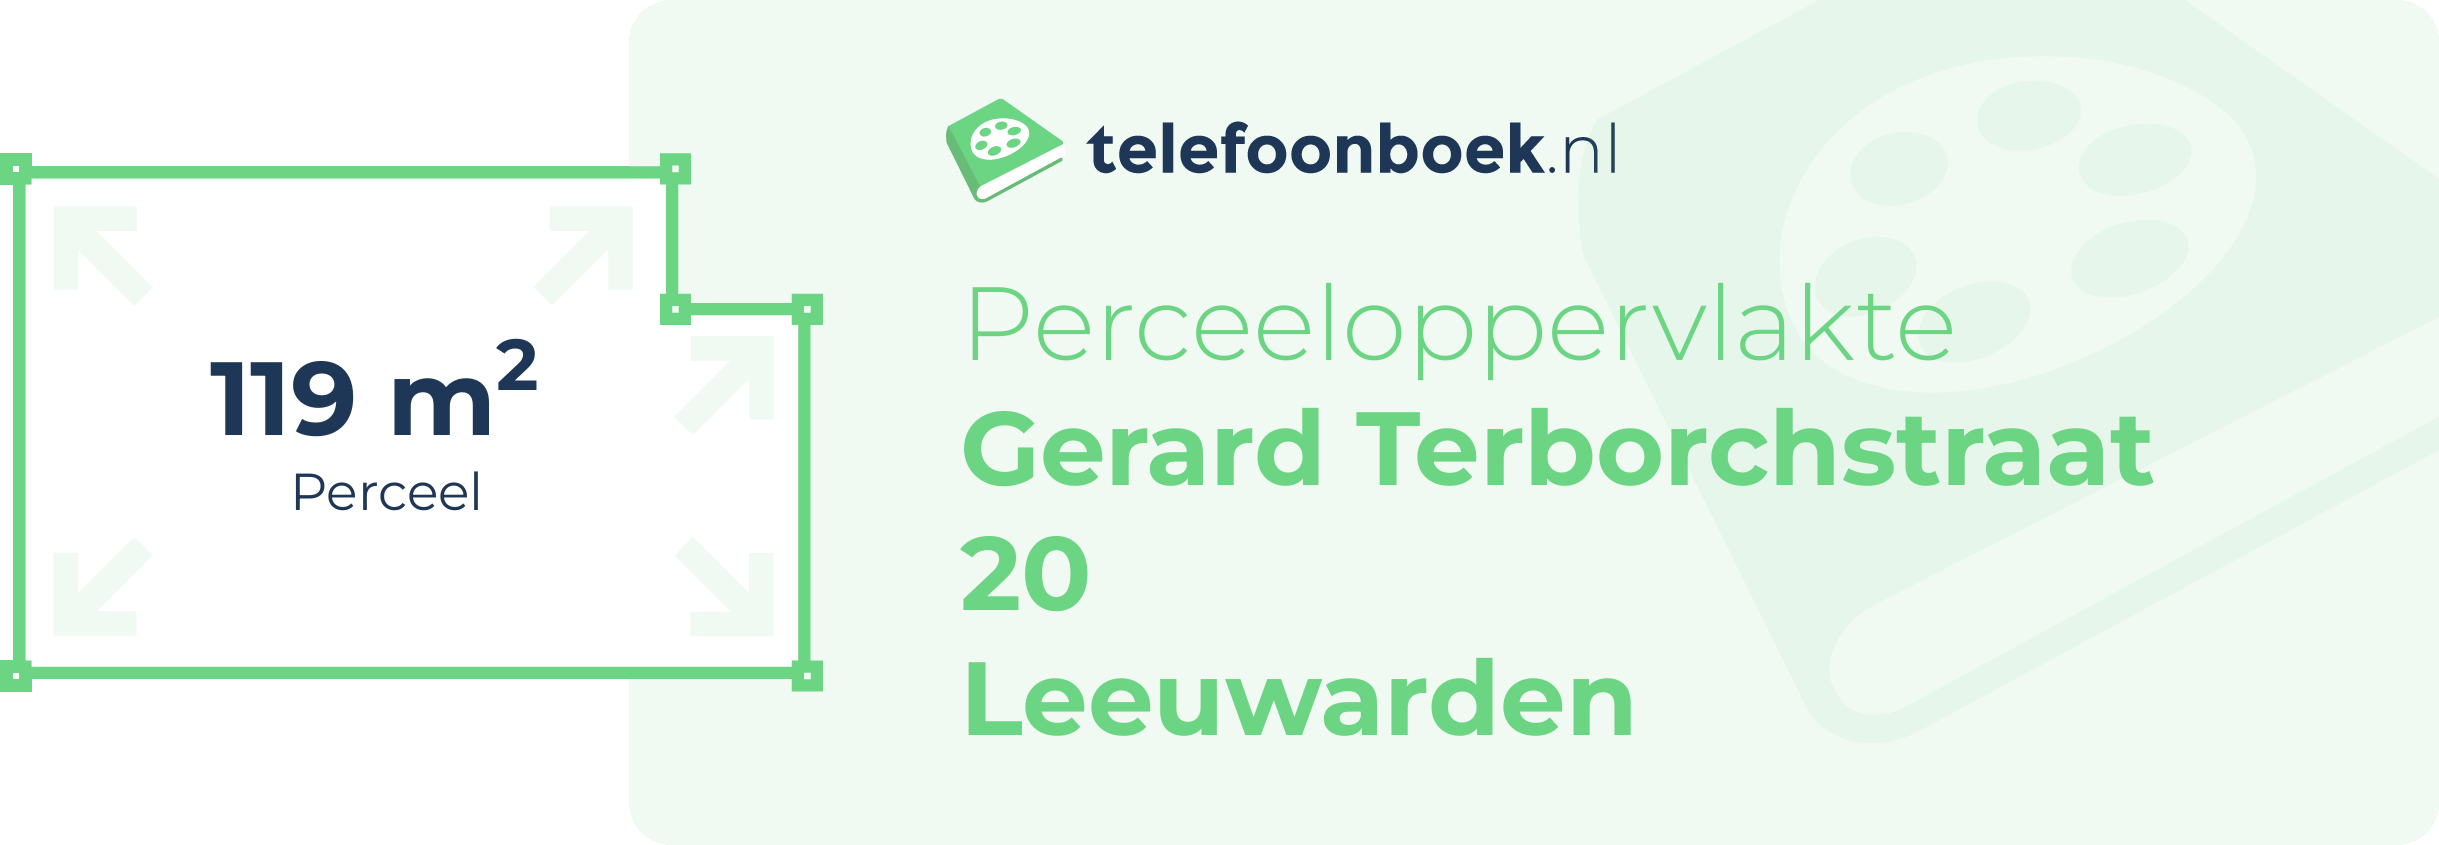 Perceeloppervlakte Gerard Terborchstraat 20 Leeuwarden